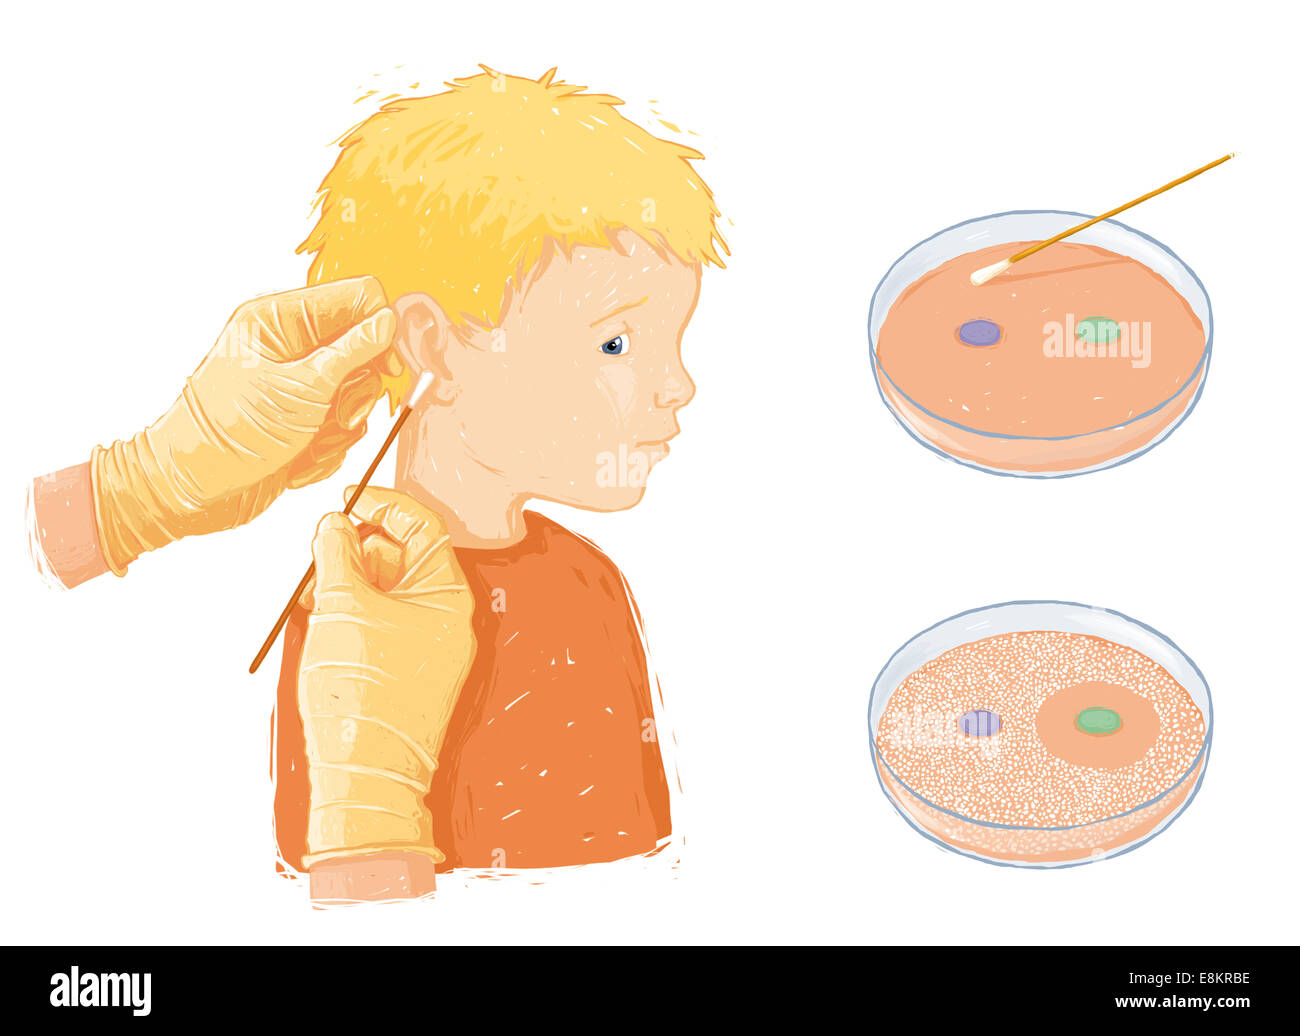 Échantillon de bactéries en child's oreille infectée (otite moyenne), en préparation d'un antibiogramme un antibiogramme de la sensibilité des tests Banque D'Images